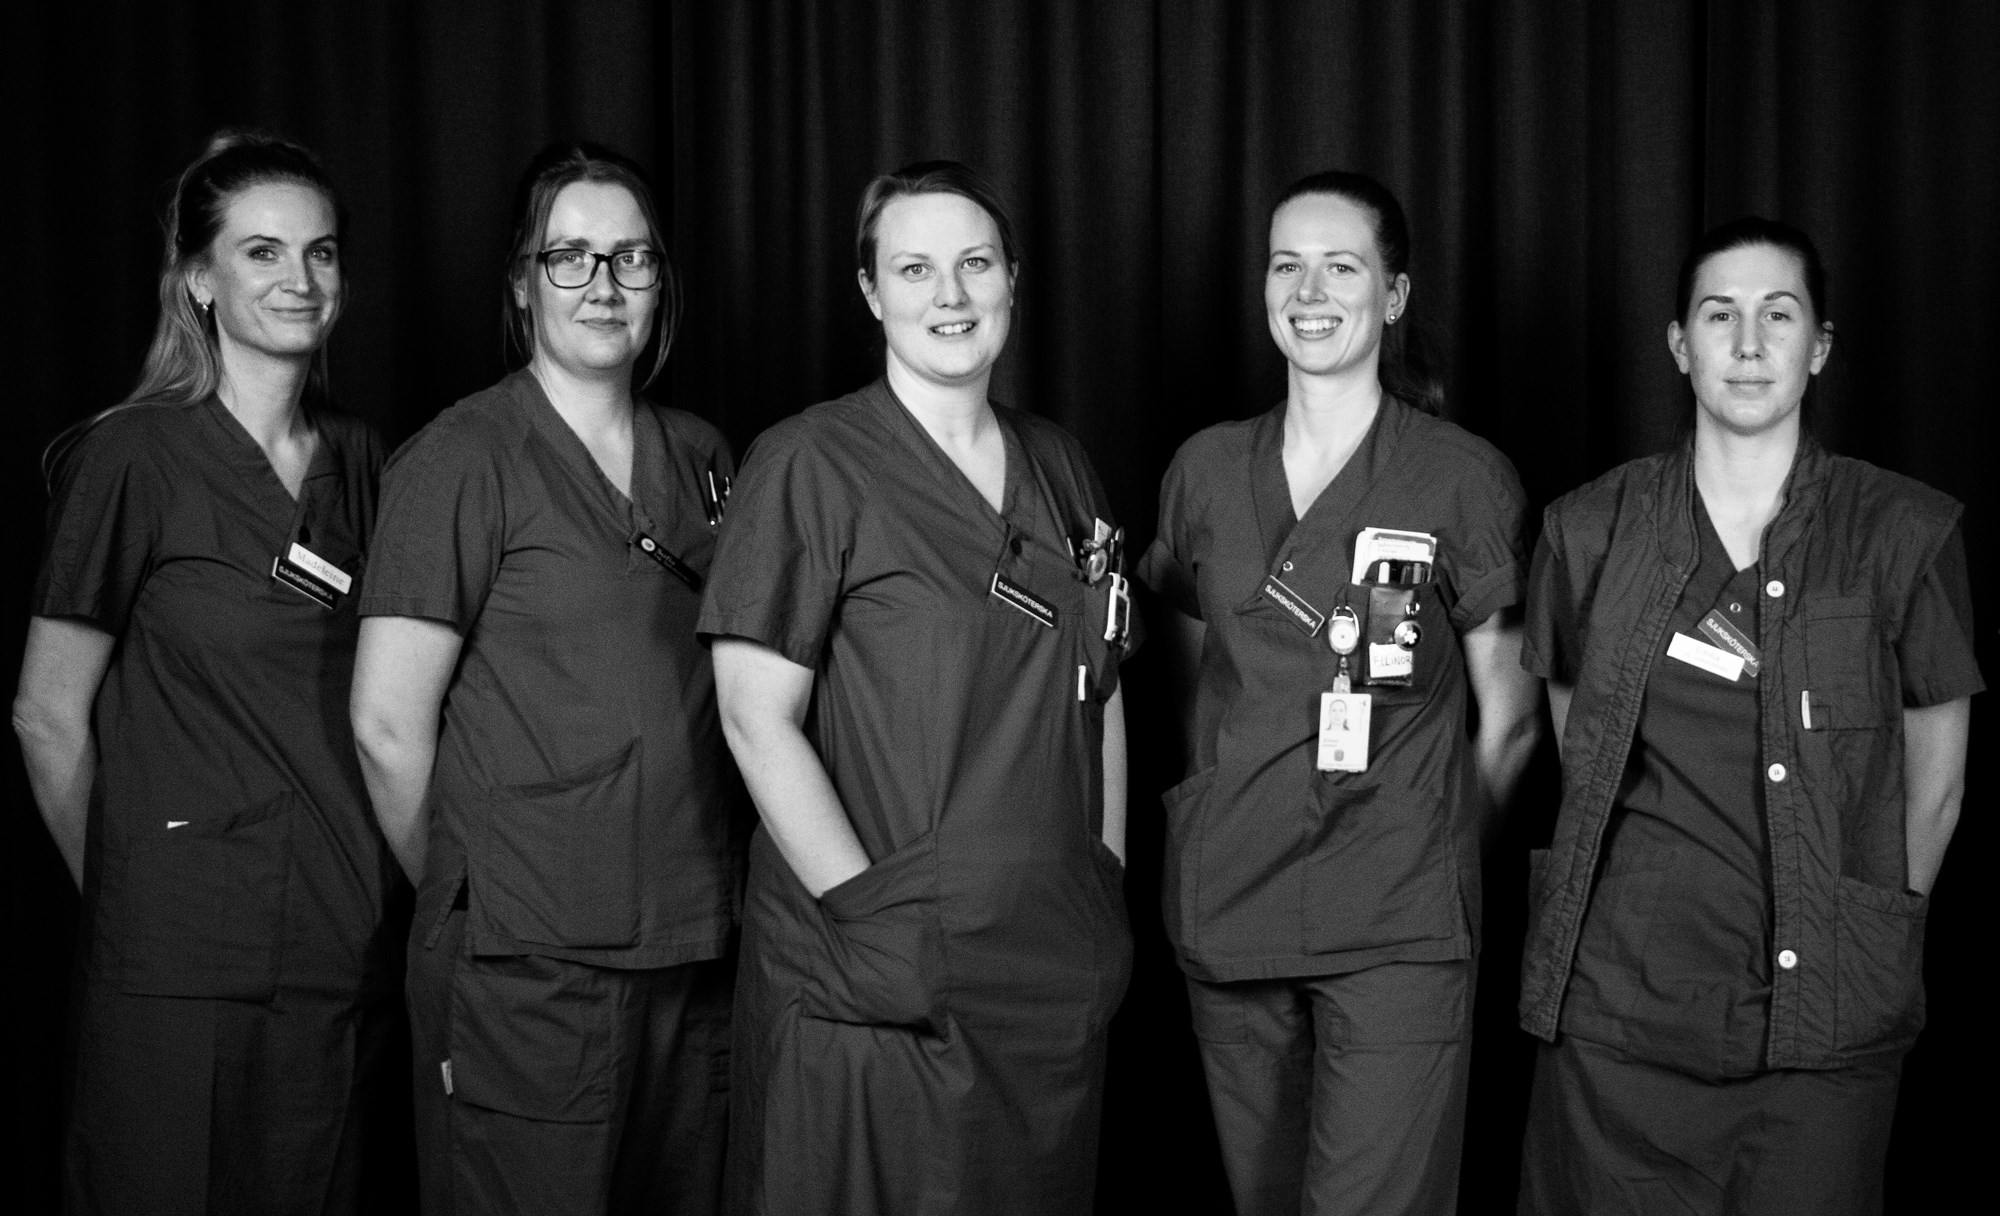 Madeleine Mjölnevik, Sofia Thelander, Jessica Moselius, Ellinor Alfredsson och Emilia Gustafsson - sjuksköterskor på kirurgikliniken.